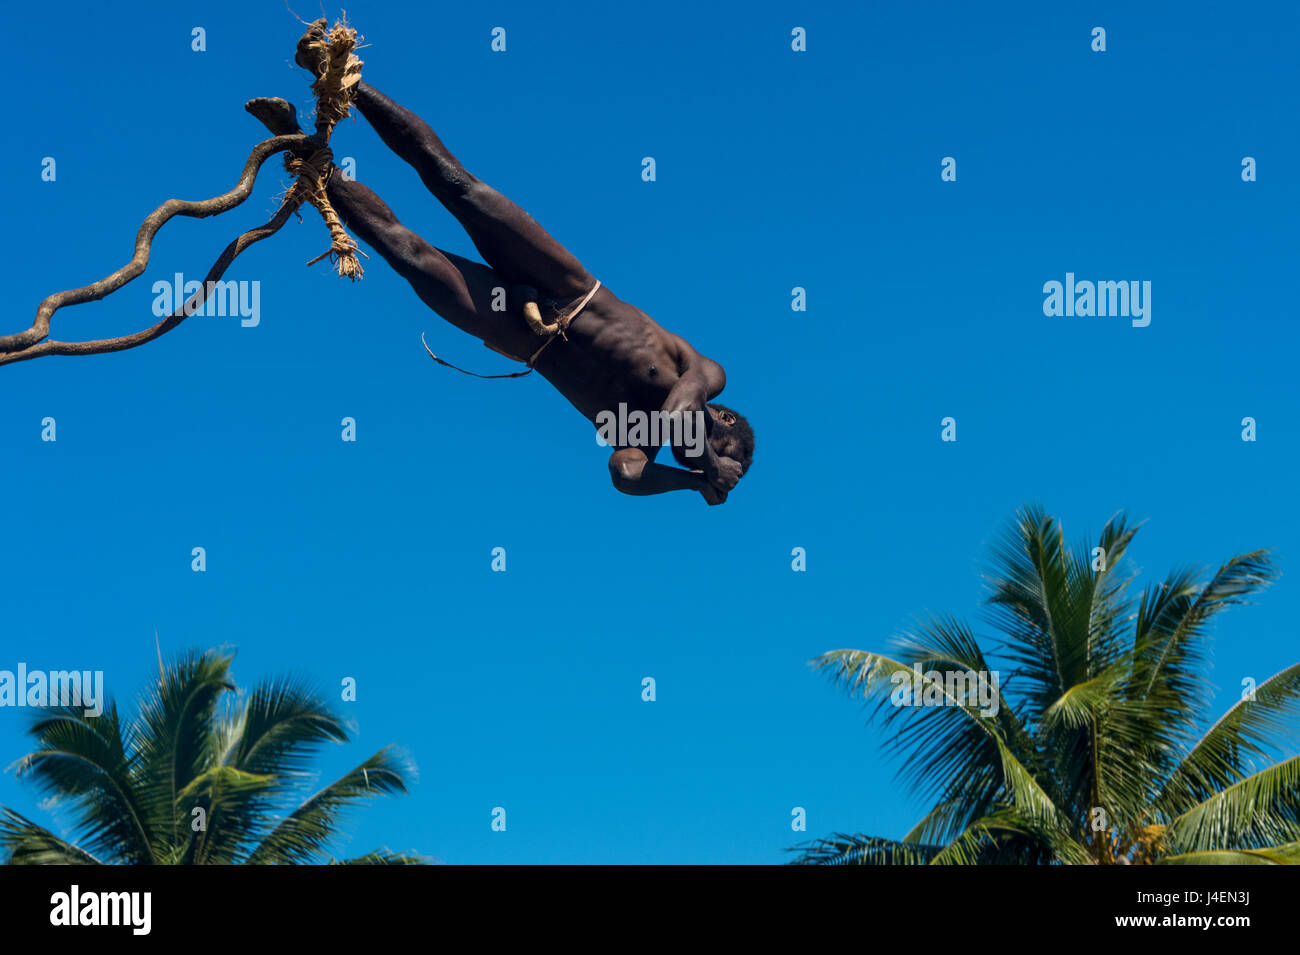 L'homme en sautant d'une tour de bambou, la Pentecôte, la Pentecôte, la plongée sous-marine du Pacifique, Vanuatu Banque D'Images